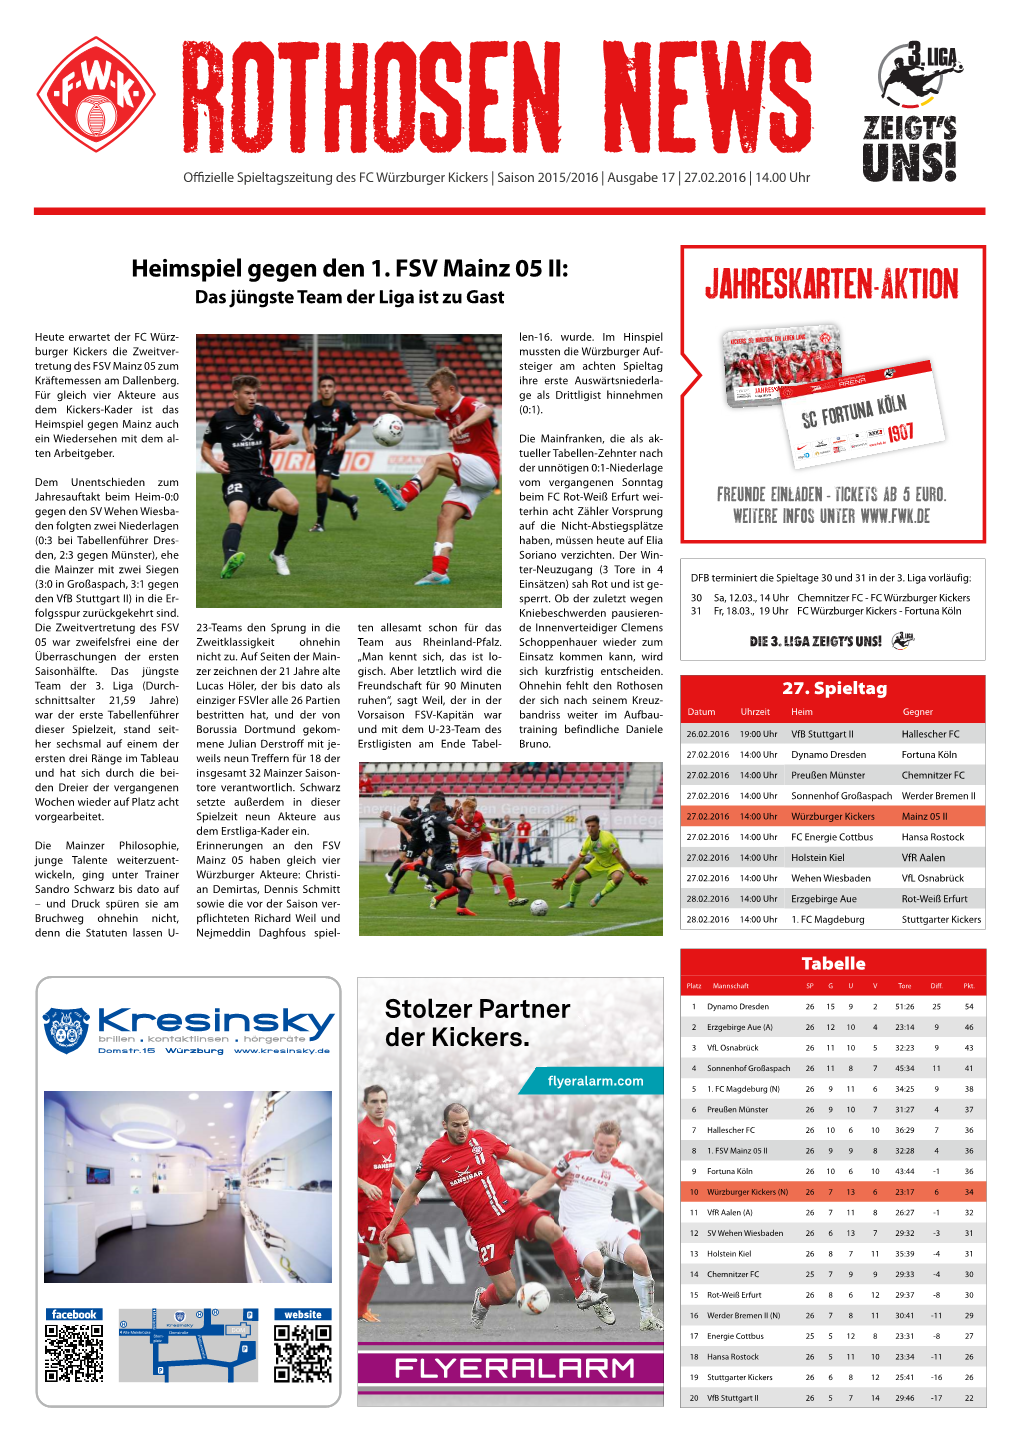 Rothosen News Ausgabe 17 / Saison 2015/16 / 3